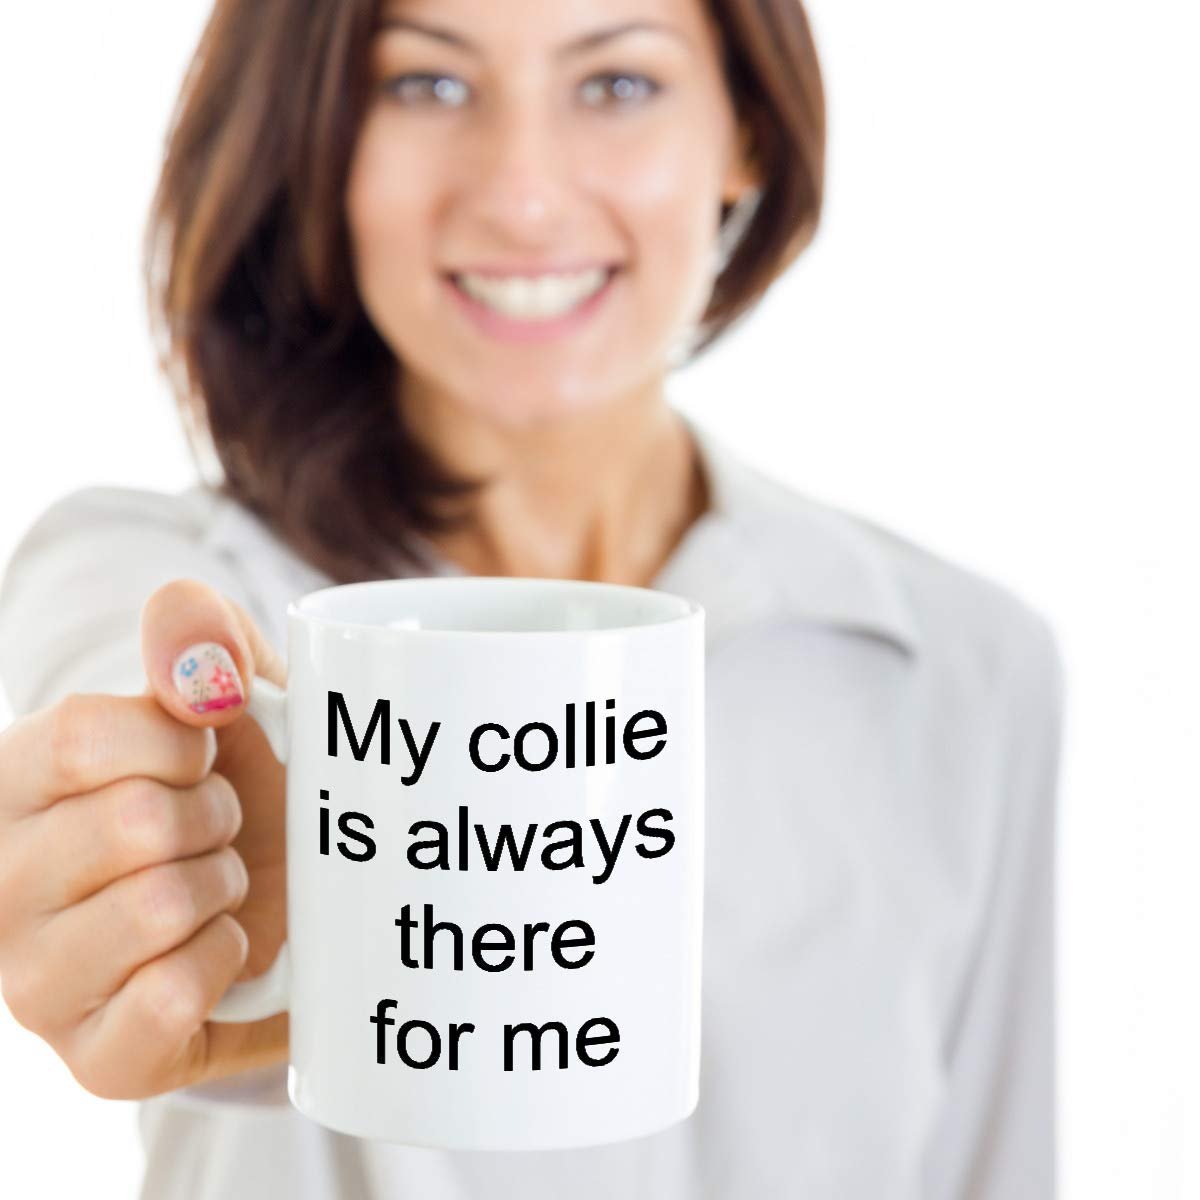 Collie coffee mug - Border collie coffee mug - collie puppy mug - bearded collie coffee mug